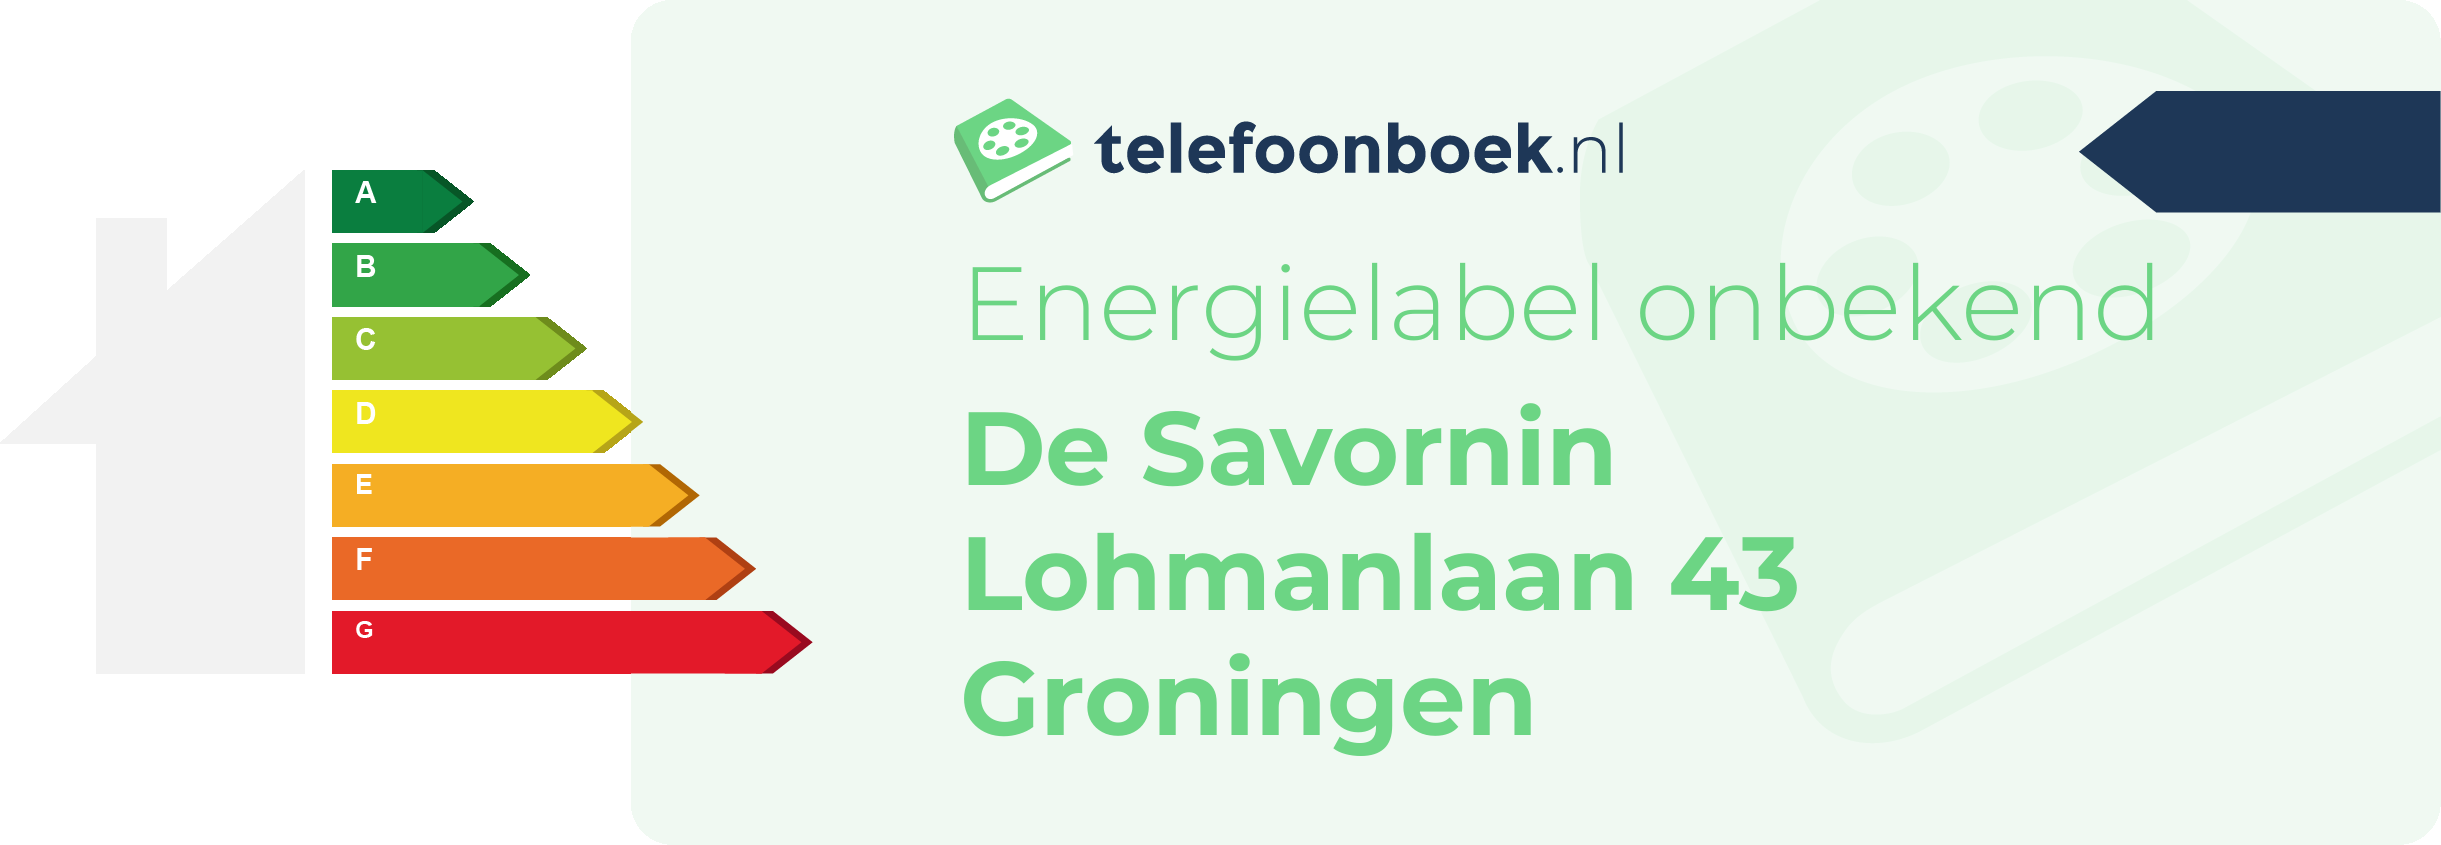 Energielabel De Savornin Lohmanlaan 43 Groningen